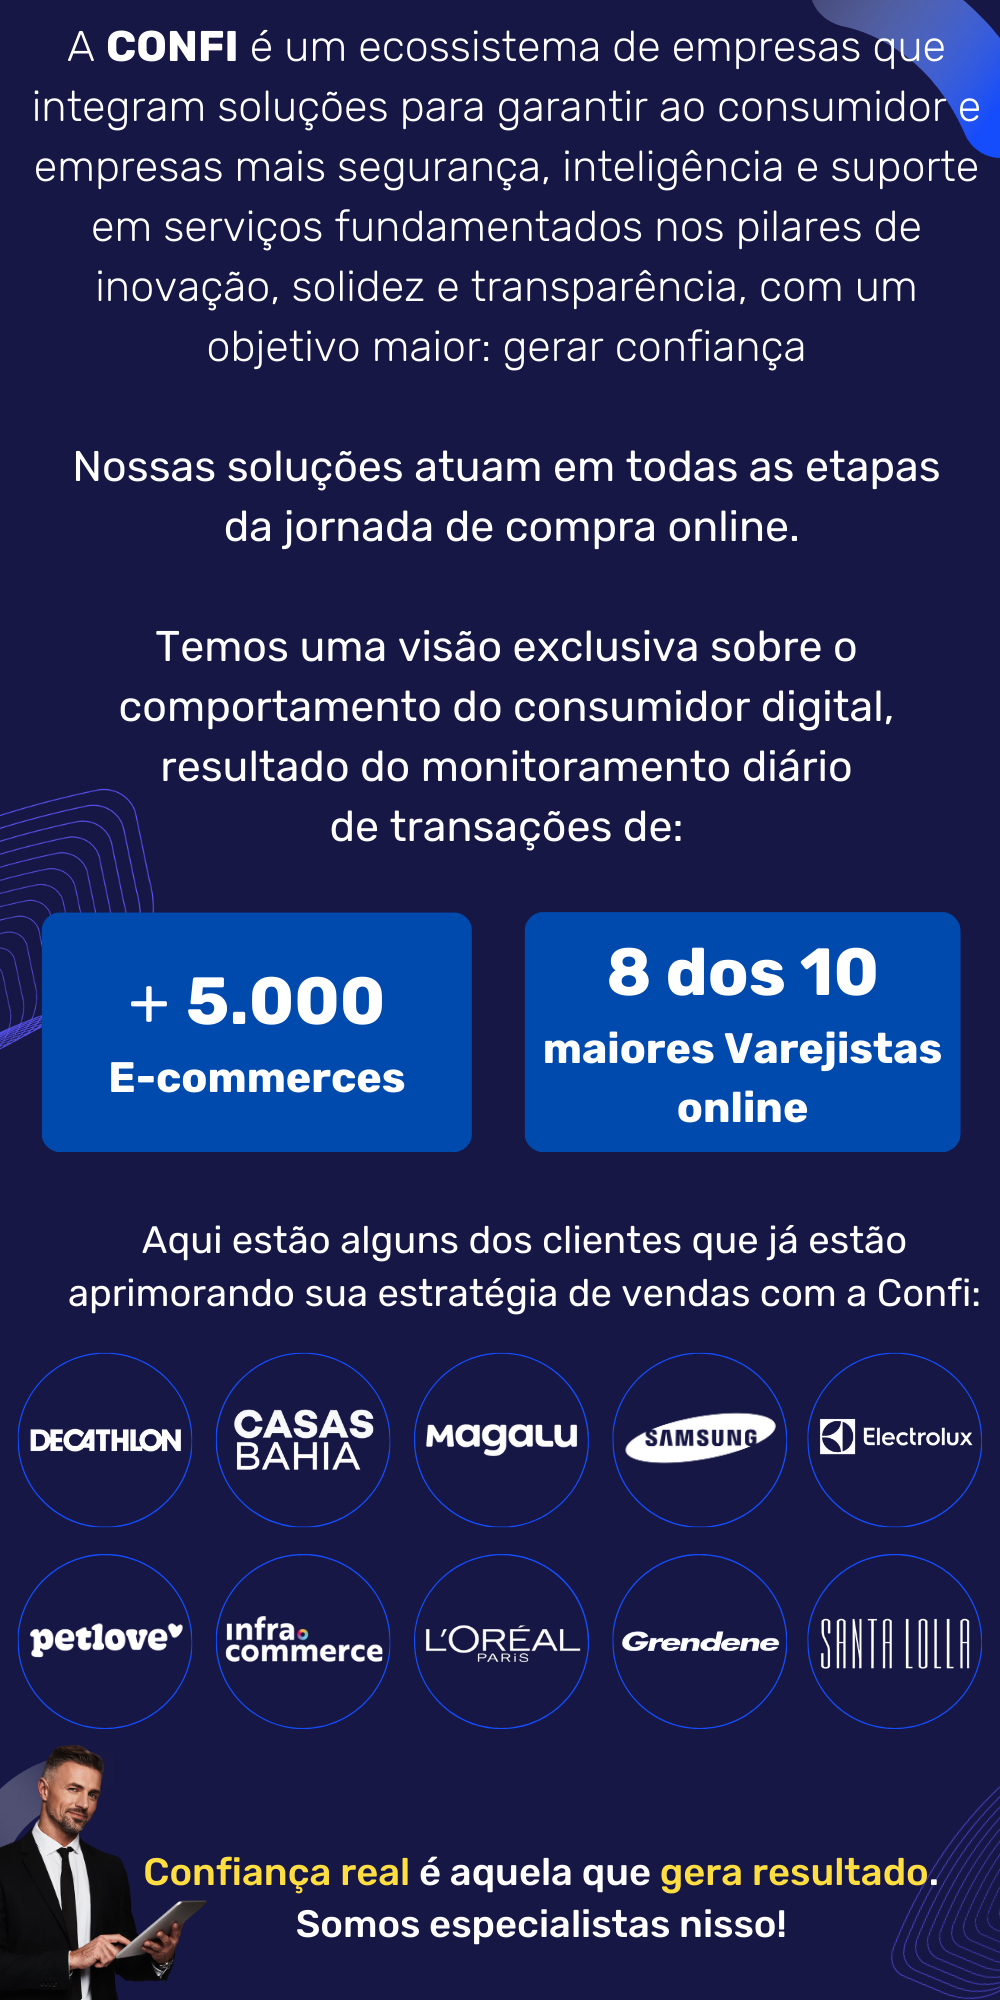 + 5.000 E-commerces (4)